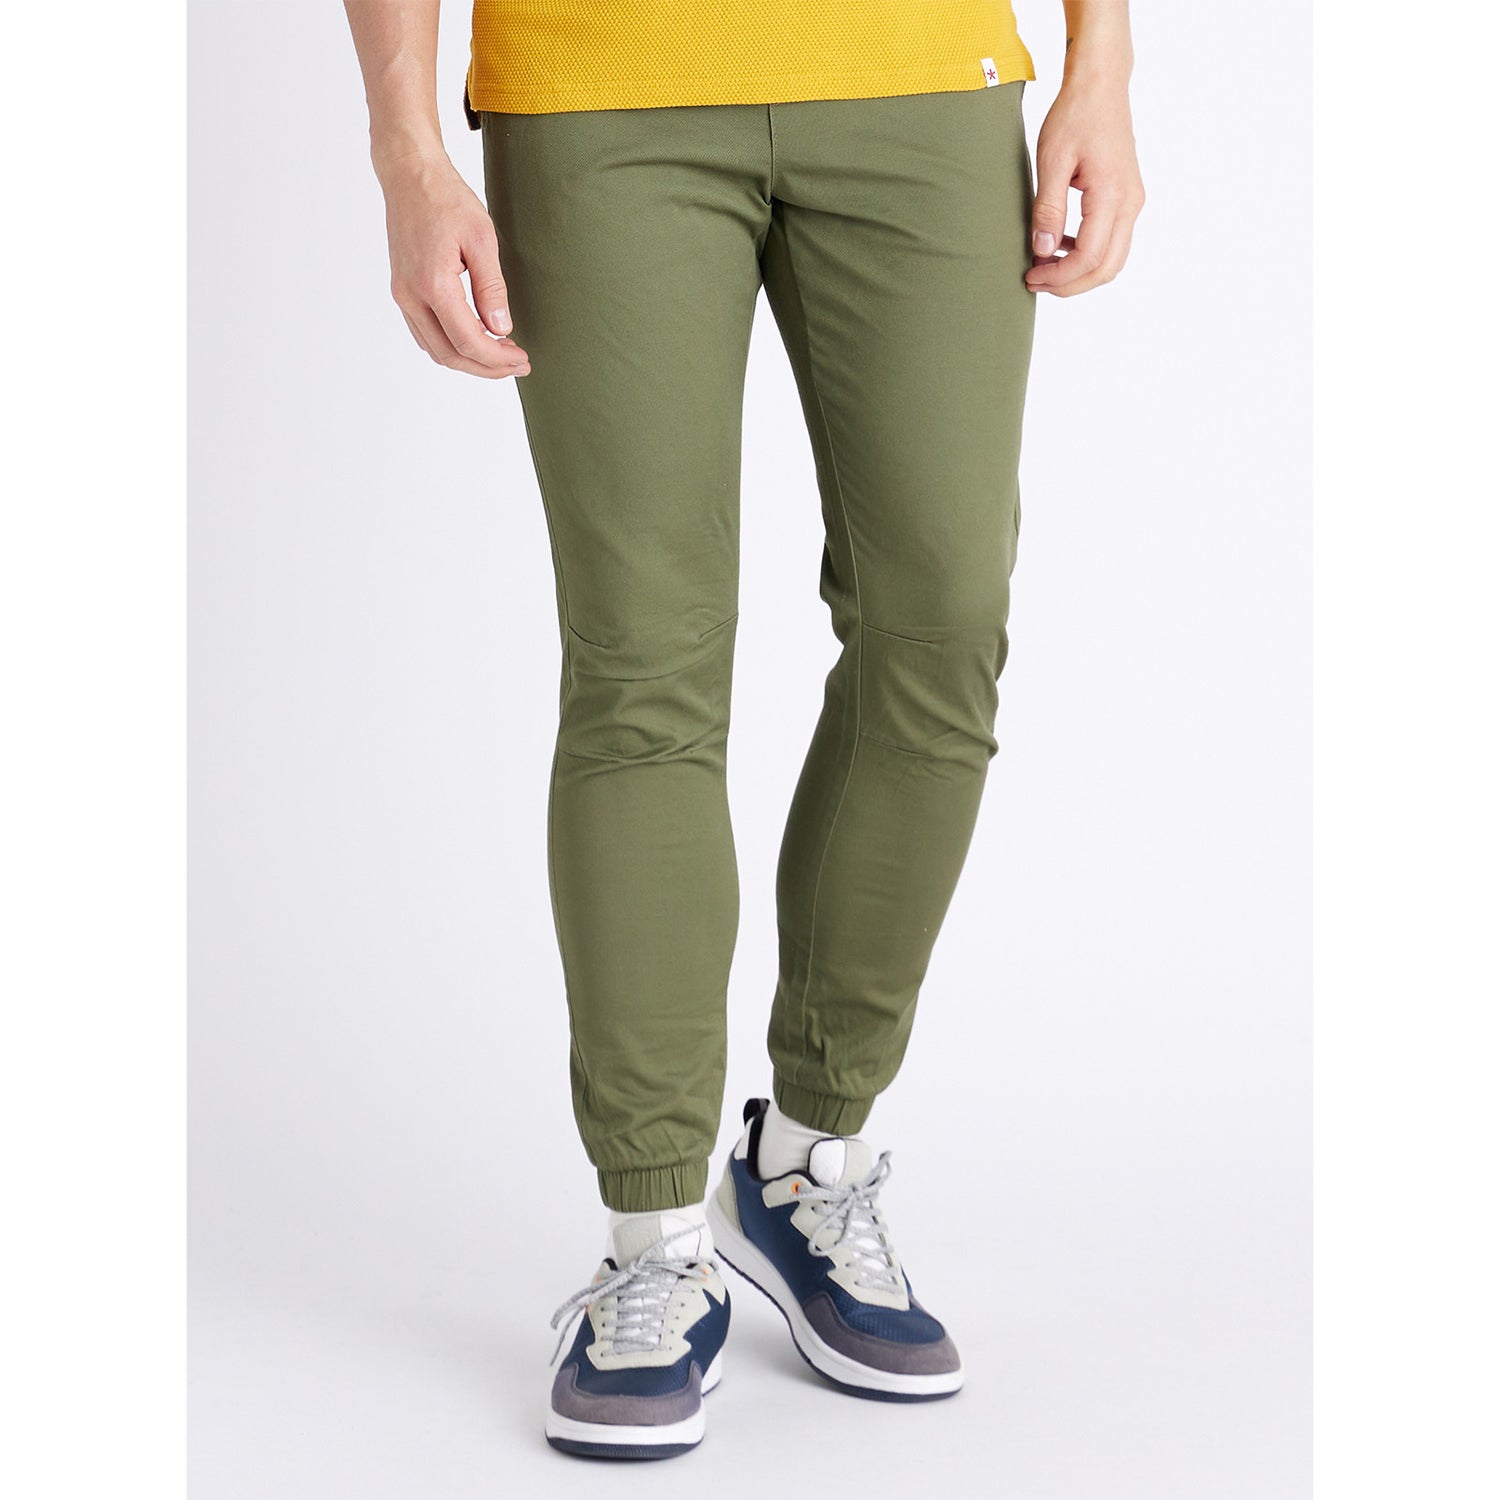 Olive Solid Jogging Trouser (DOBASIC)